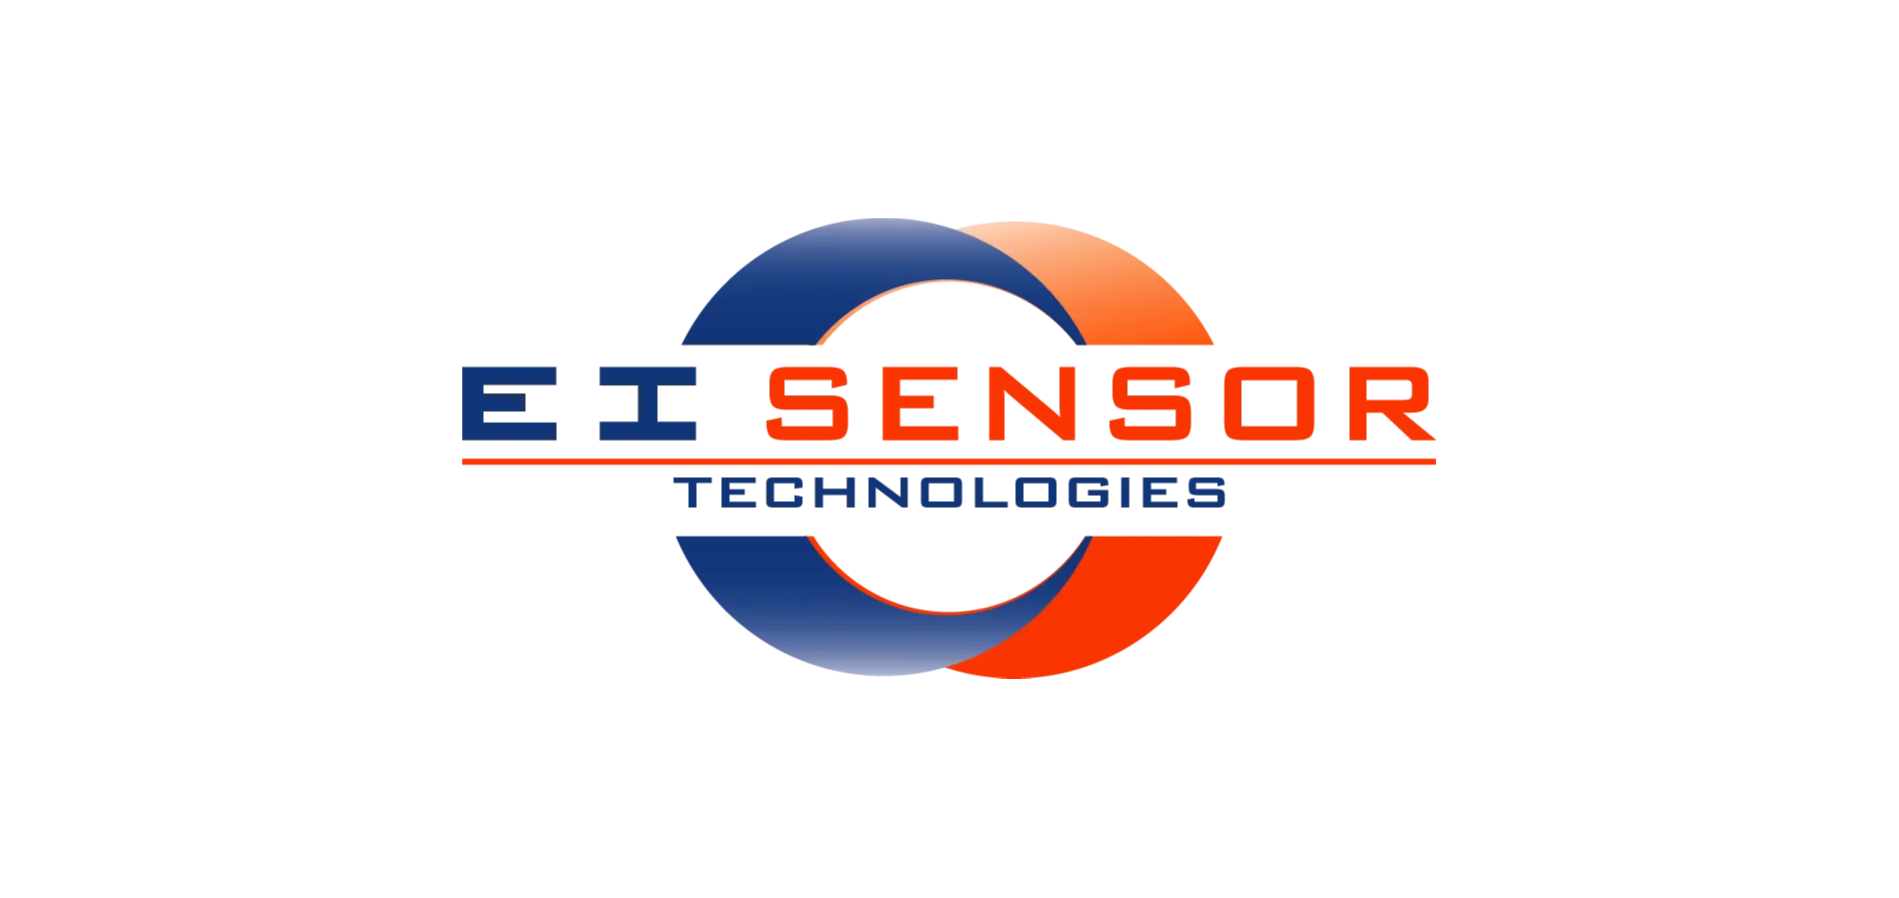 EI sensor